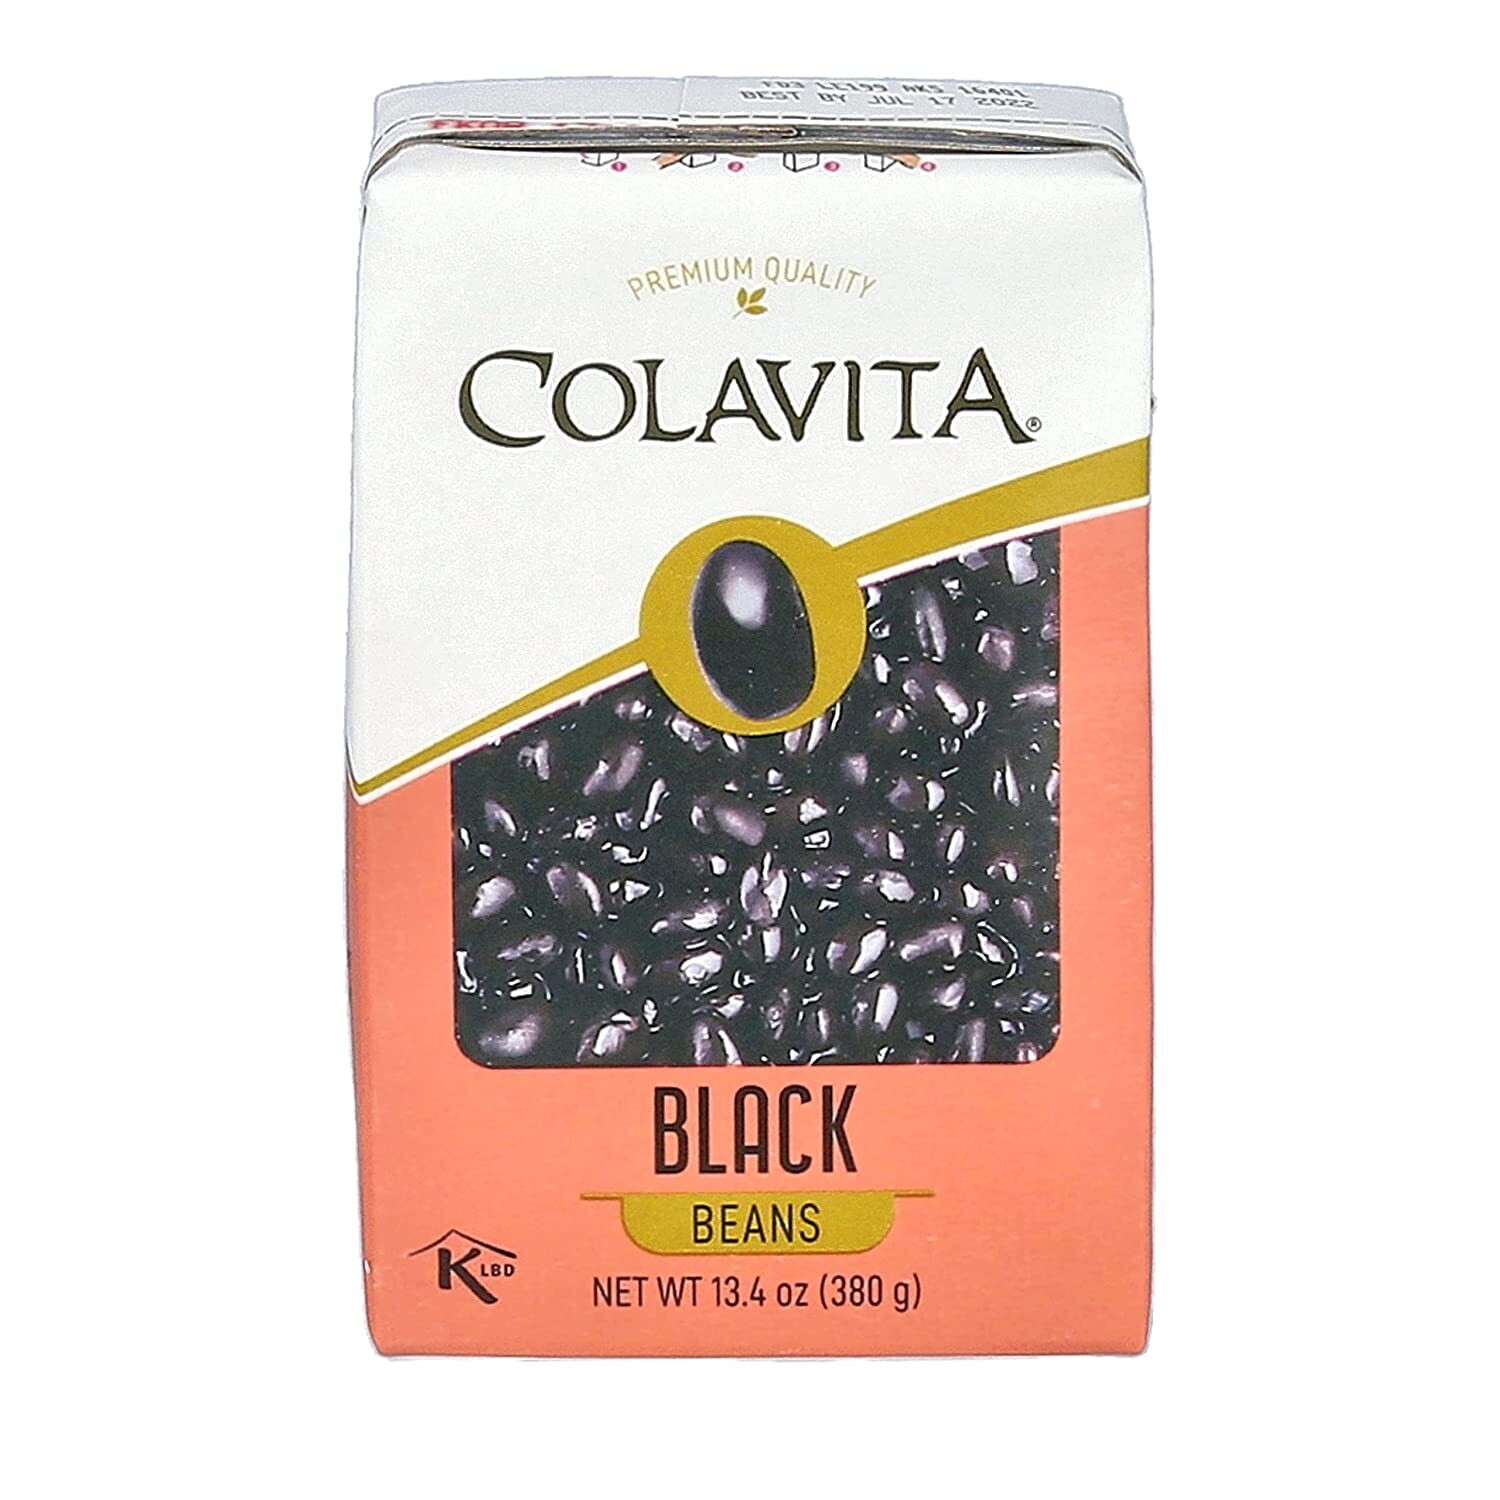 Colavita Bean Box - Black Beans